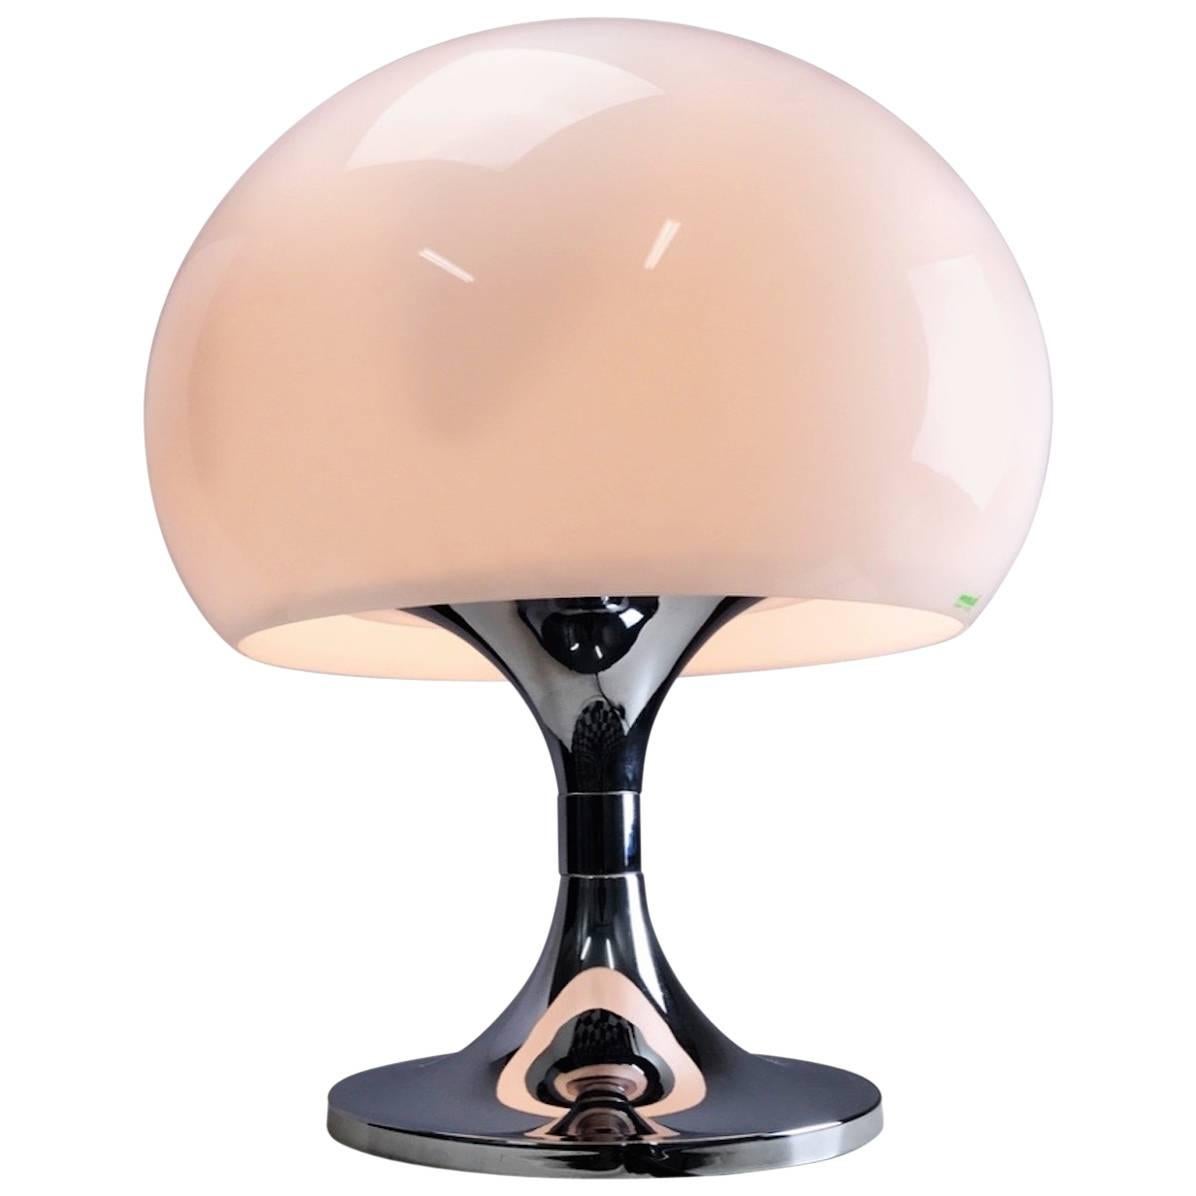 iGuzzini Large Chrome Table Lamp